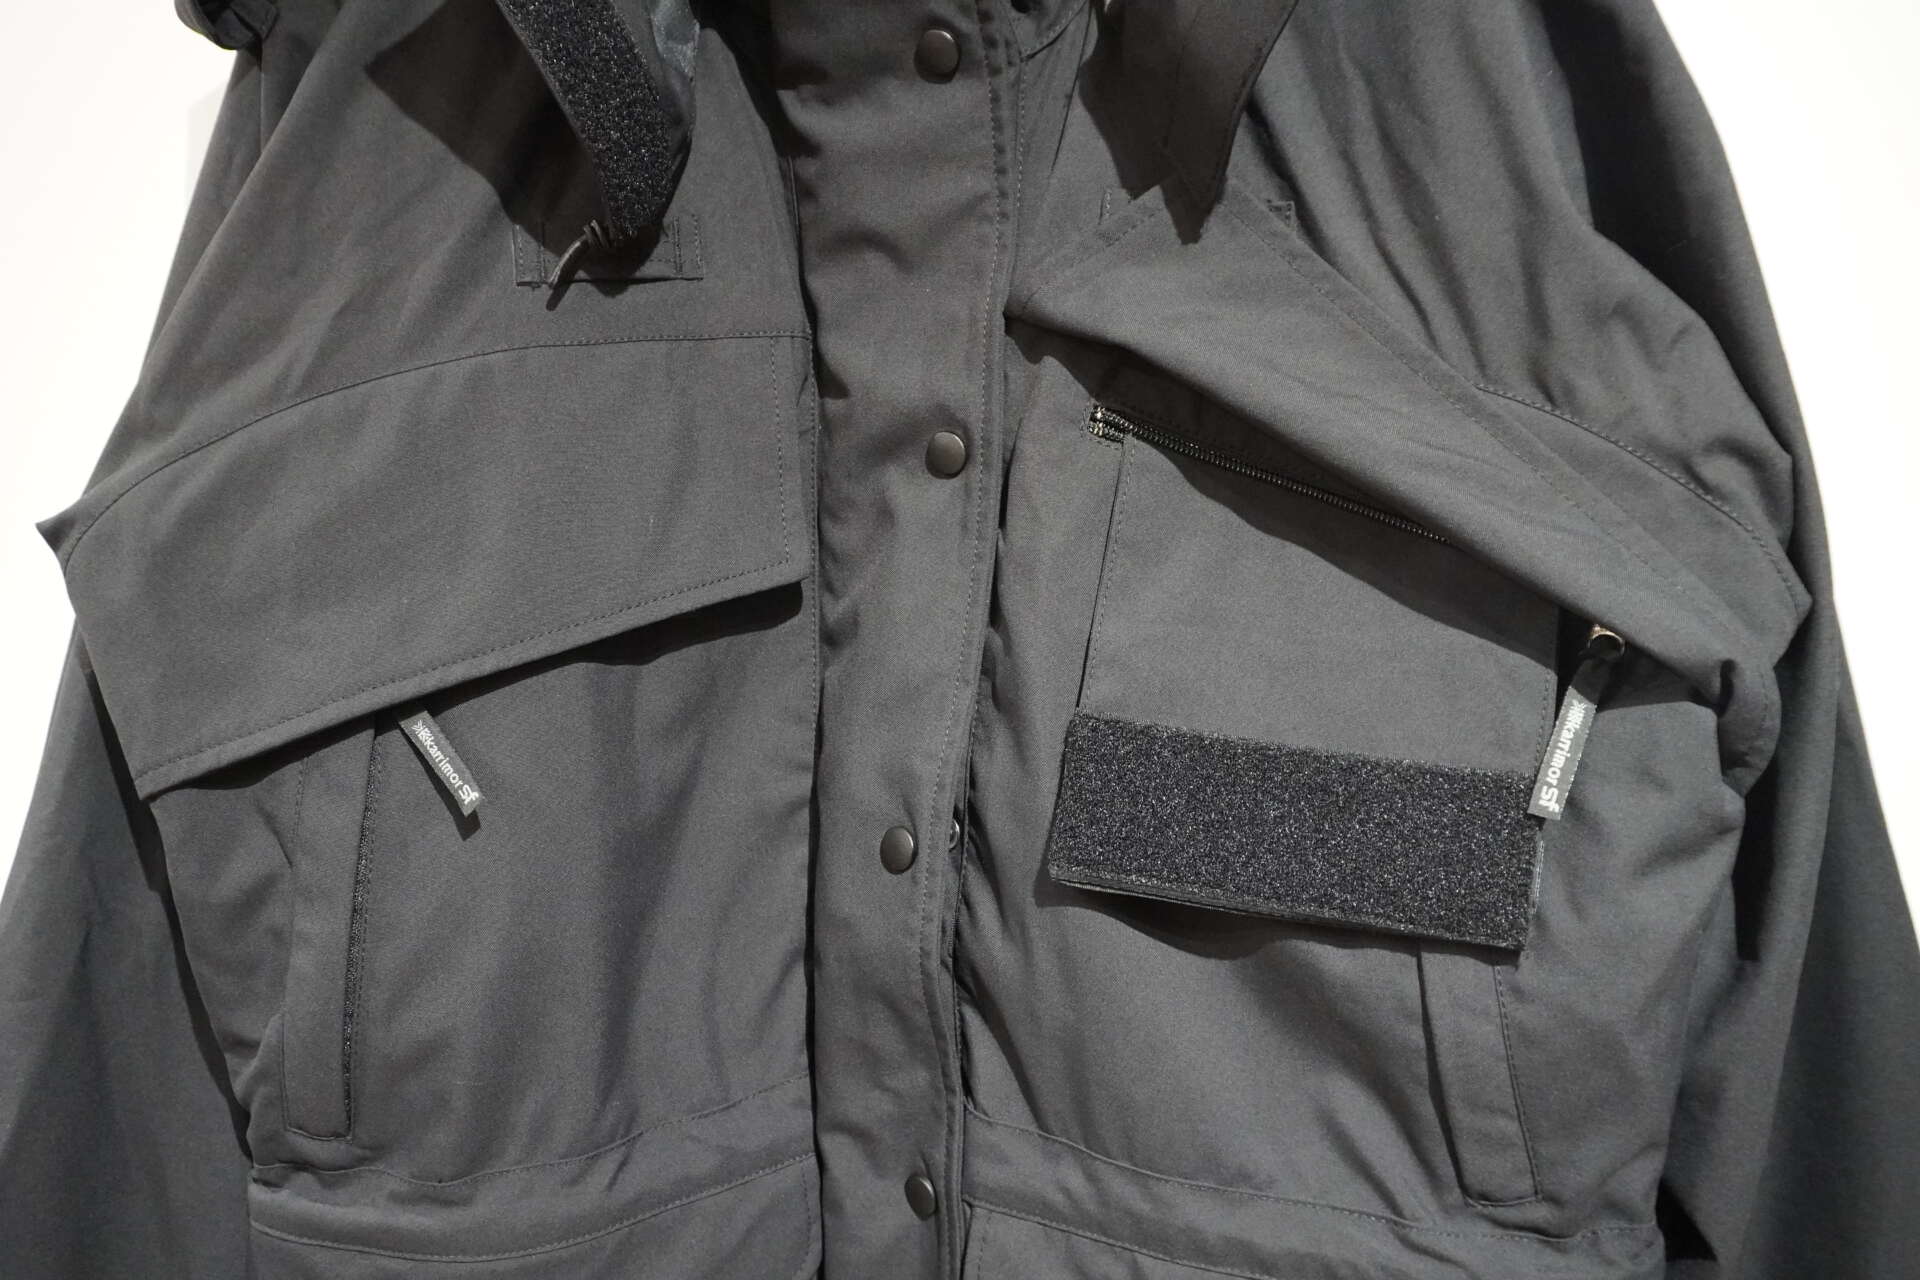 karrimorSF enforcer jacket pocket detail